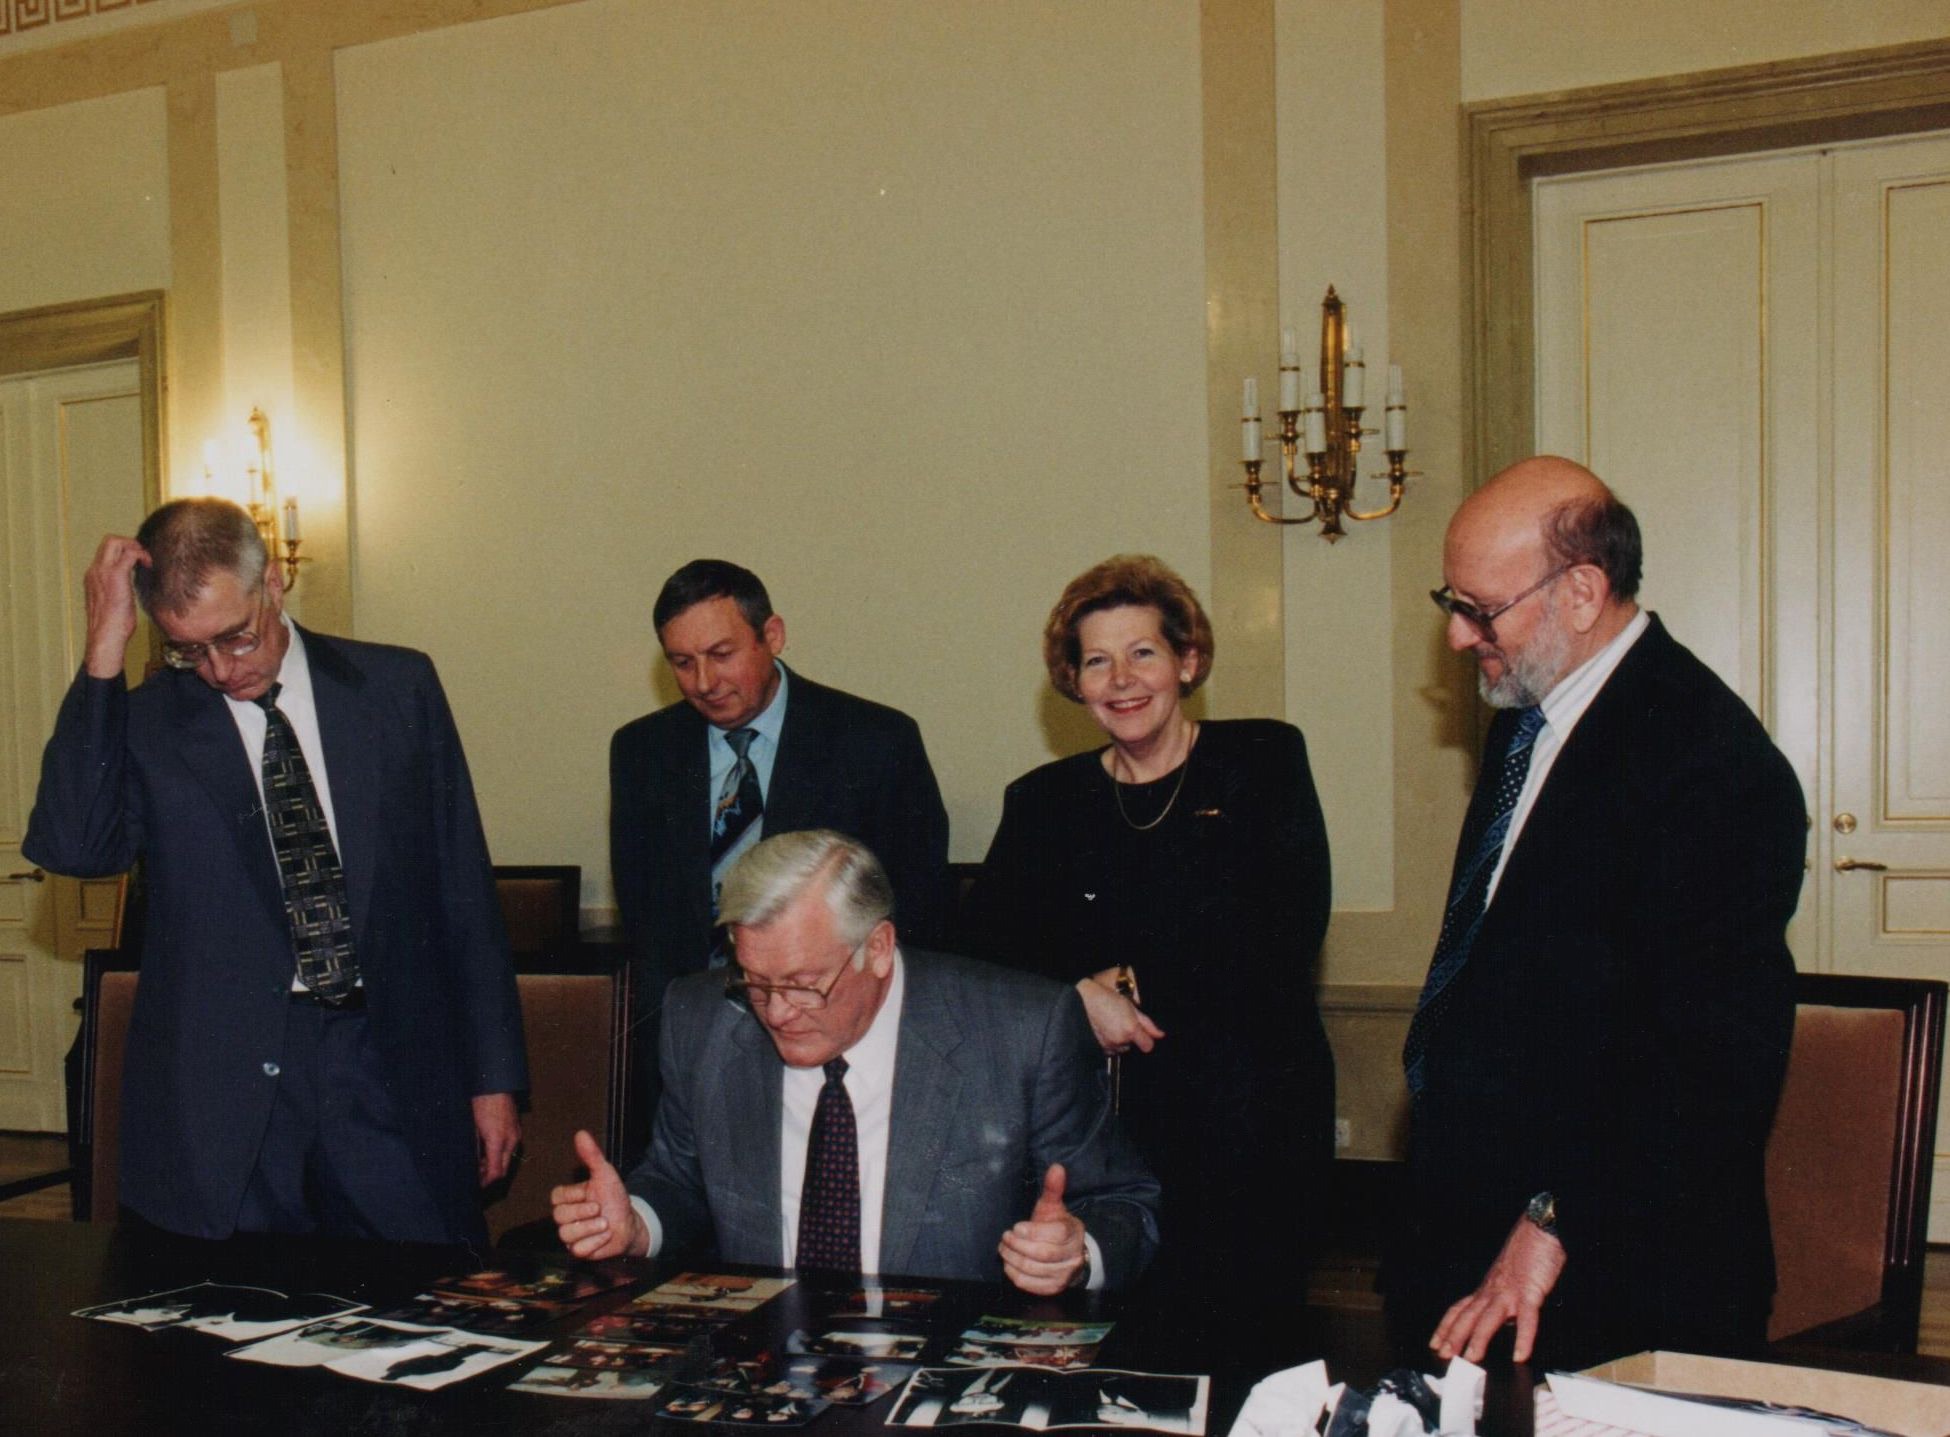 LR Prezidento A. Brazausko kadencijai baigiantis, G. Ilgūnui kilo mintis apie jo prezidentavimo laikotarpį parašyti knygą-albumą. Nuotraukų atrinkimas albumui. Iš kairės: Prezidento kanceliarijos vadovas A. Meškauskas, Ūkio skyriaus viršininkas E. Tašlinskis, Prezidento sekretorė ir G. Ilgūnas. 1997 m. gruodžio 10 d.